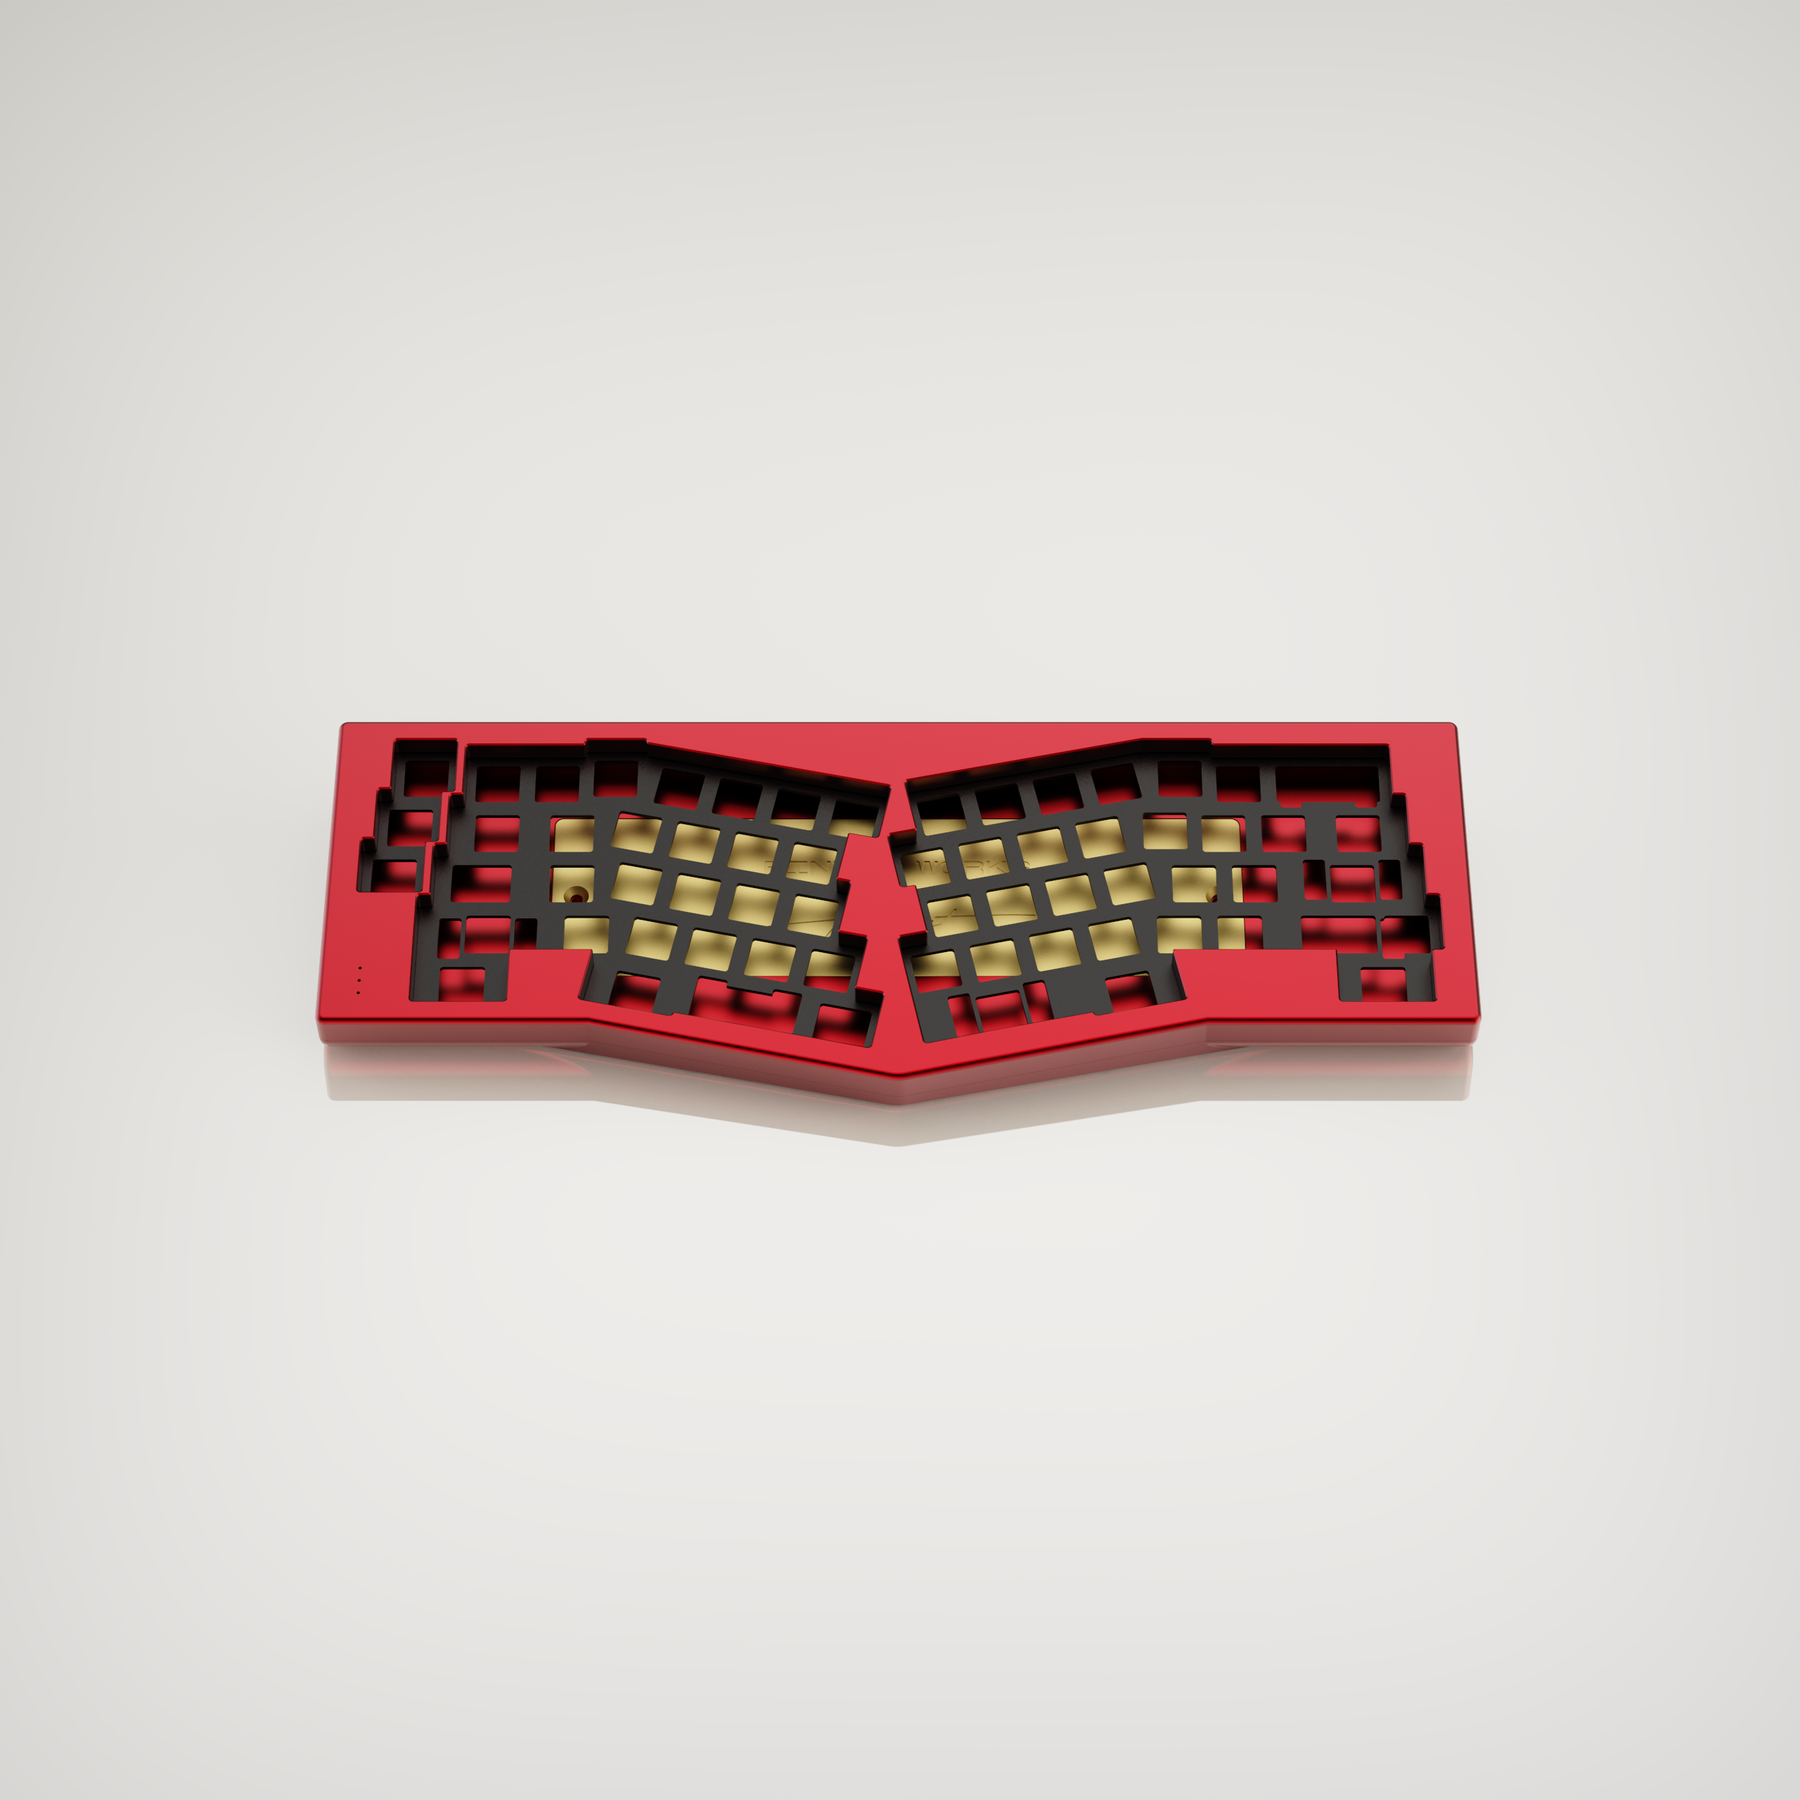 Tengu Keyboard Kit